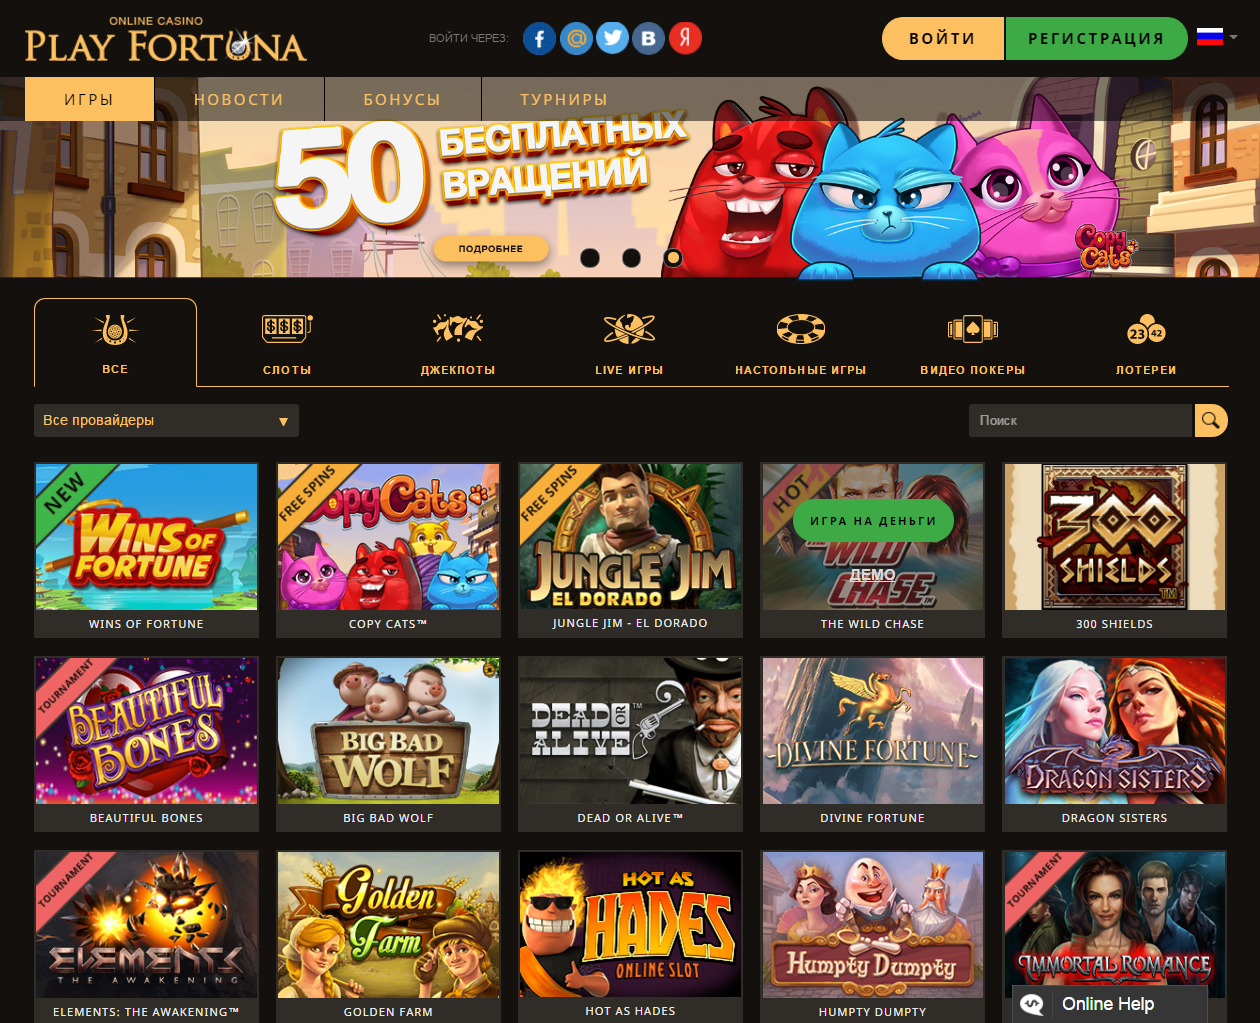 Фортуна казино онлайн официальный сайт отзывы ограбления казино в гта 5 онлайн подготовка